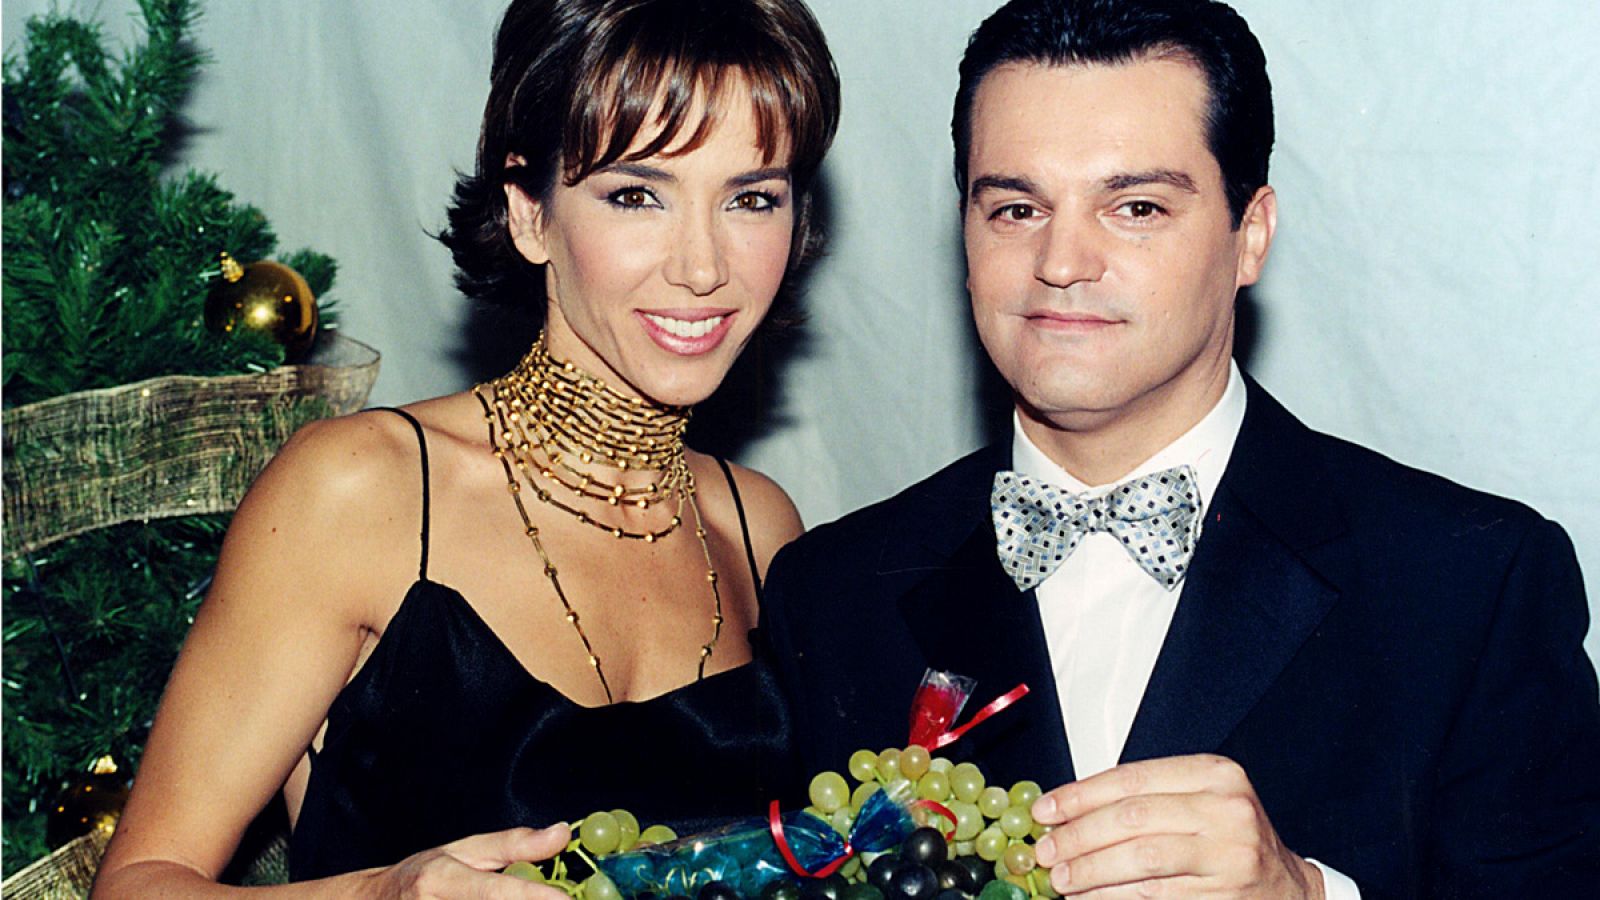 Paloma Lago y Ramón García fueron los comentaristas de las campanadas de 2001 en TVE